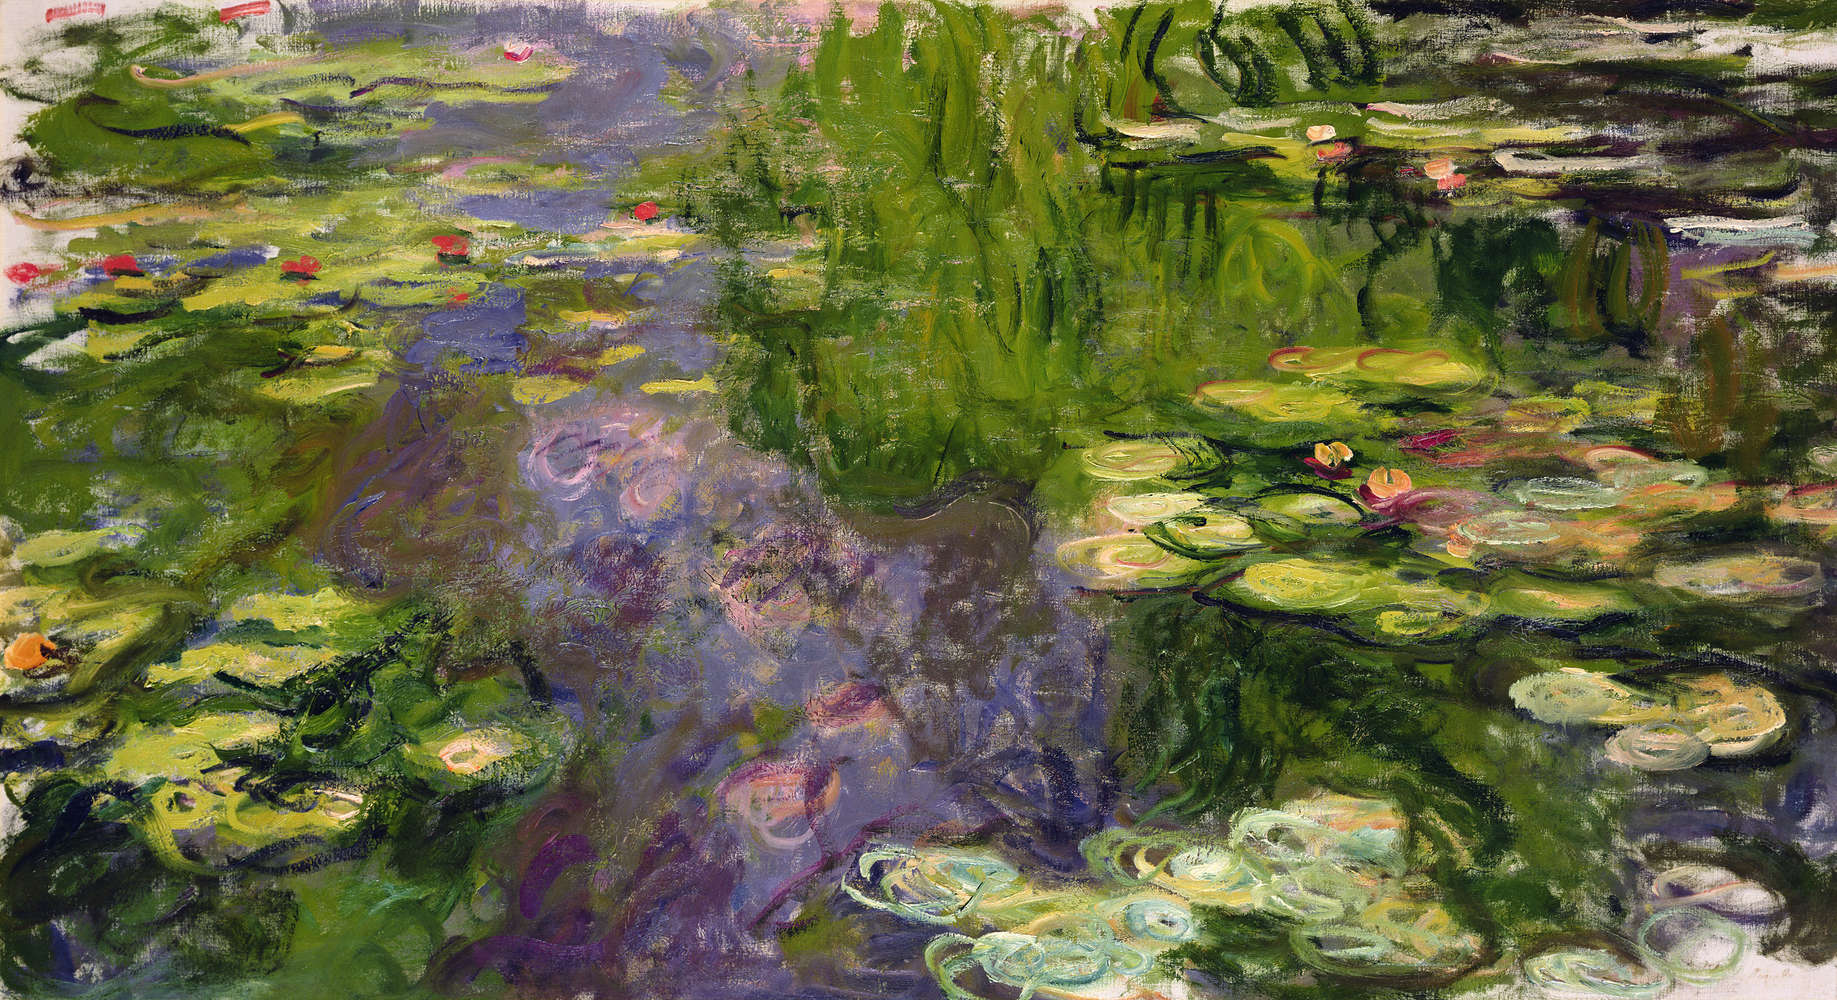             Papier peint panoramique "Nymphéas" de Claude Monet
        